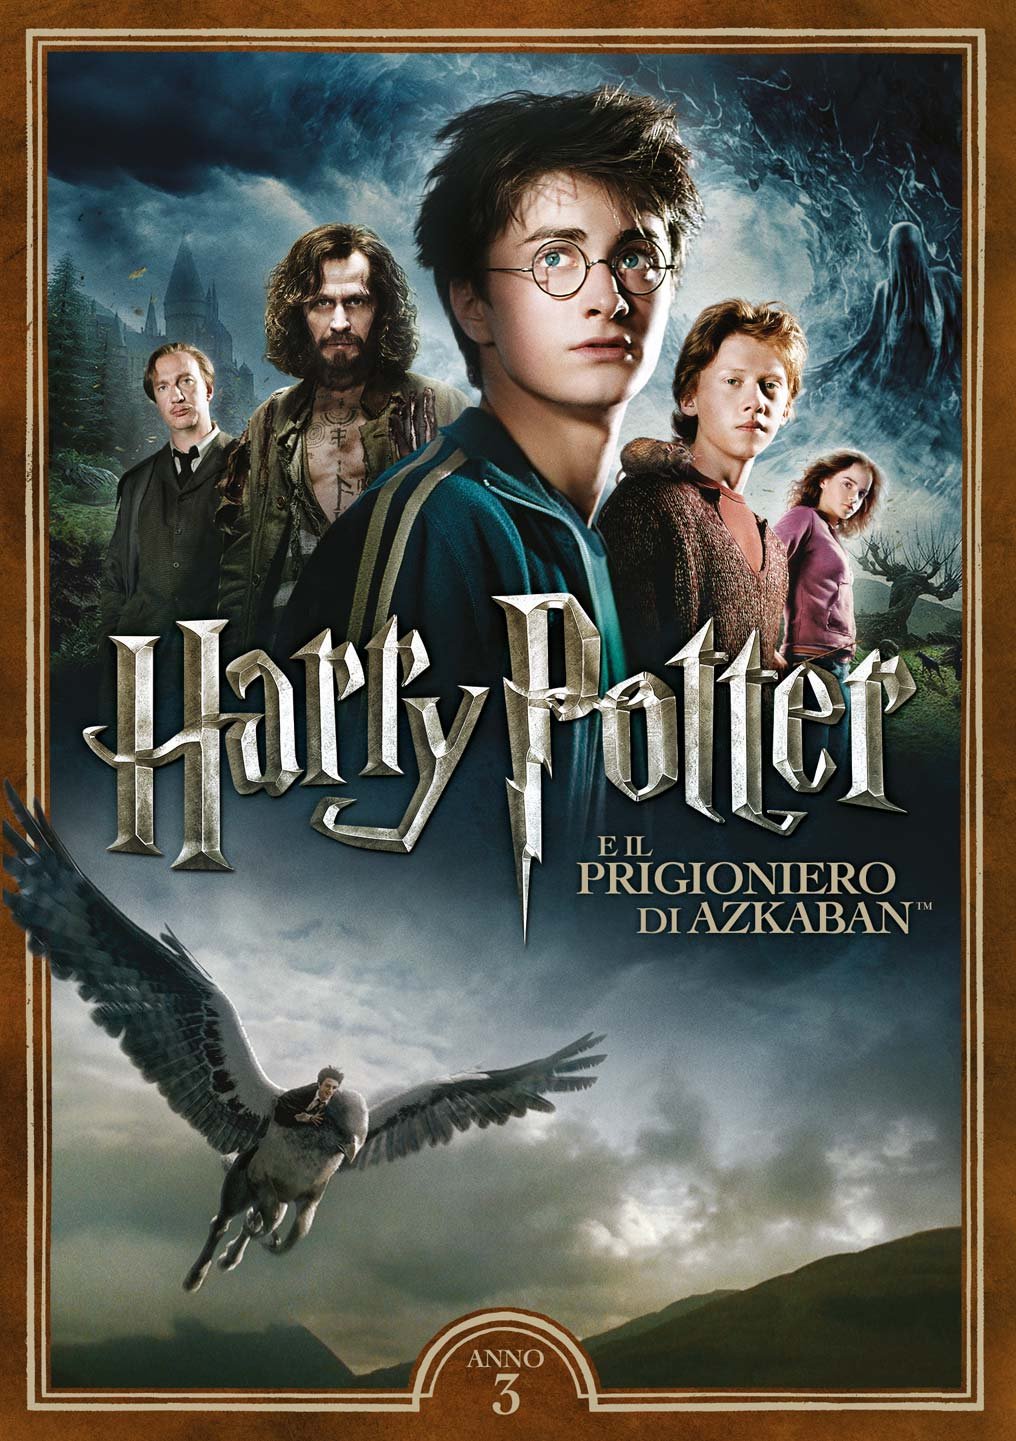 Harry Potter e il prigioniero di Azkaban [HD] (2004)